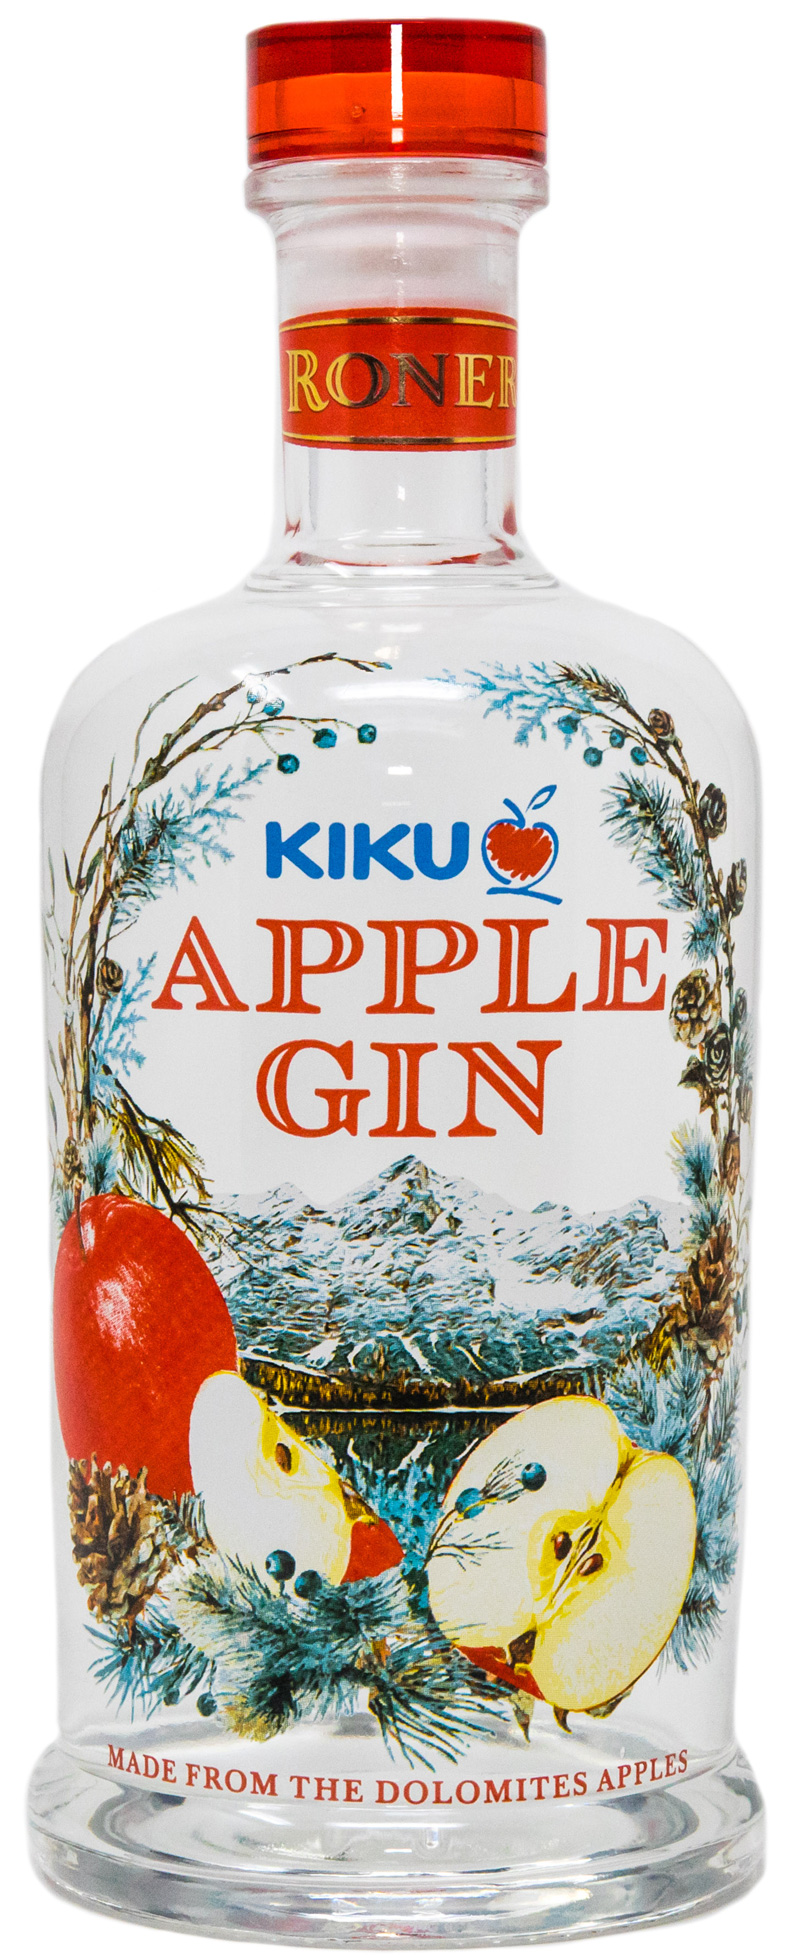 Kiku Apple Gin  "Roner" 42% Vol.im Geschenkkarton